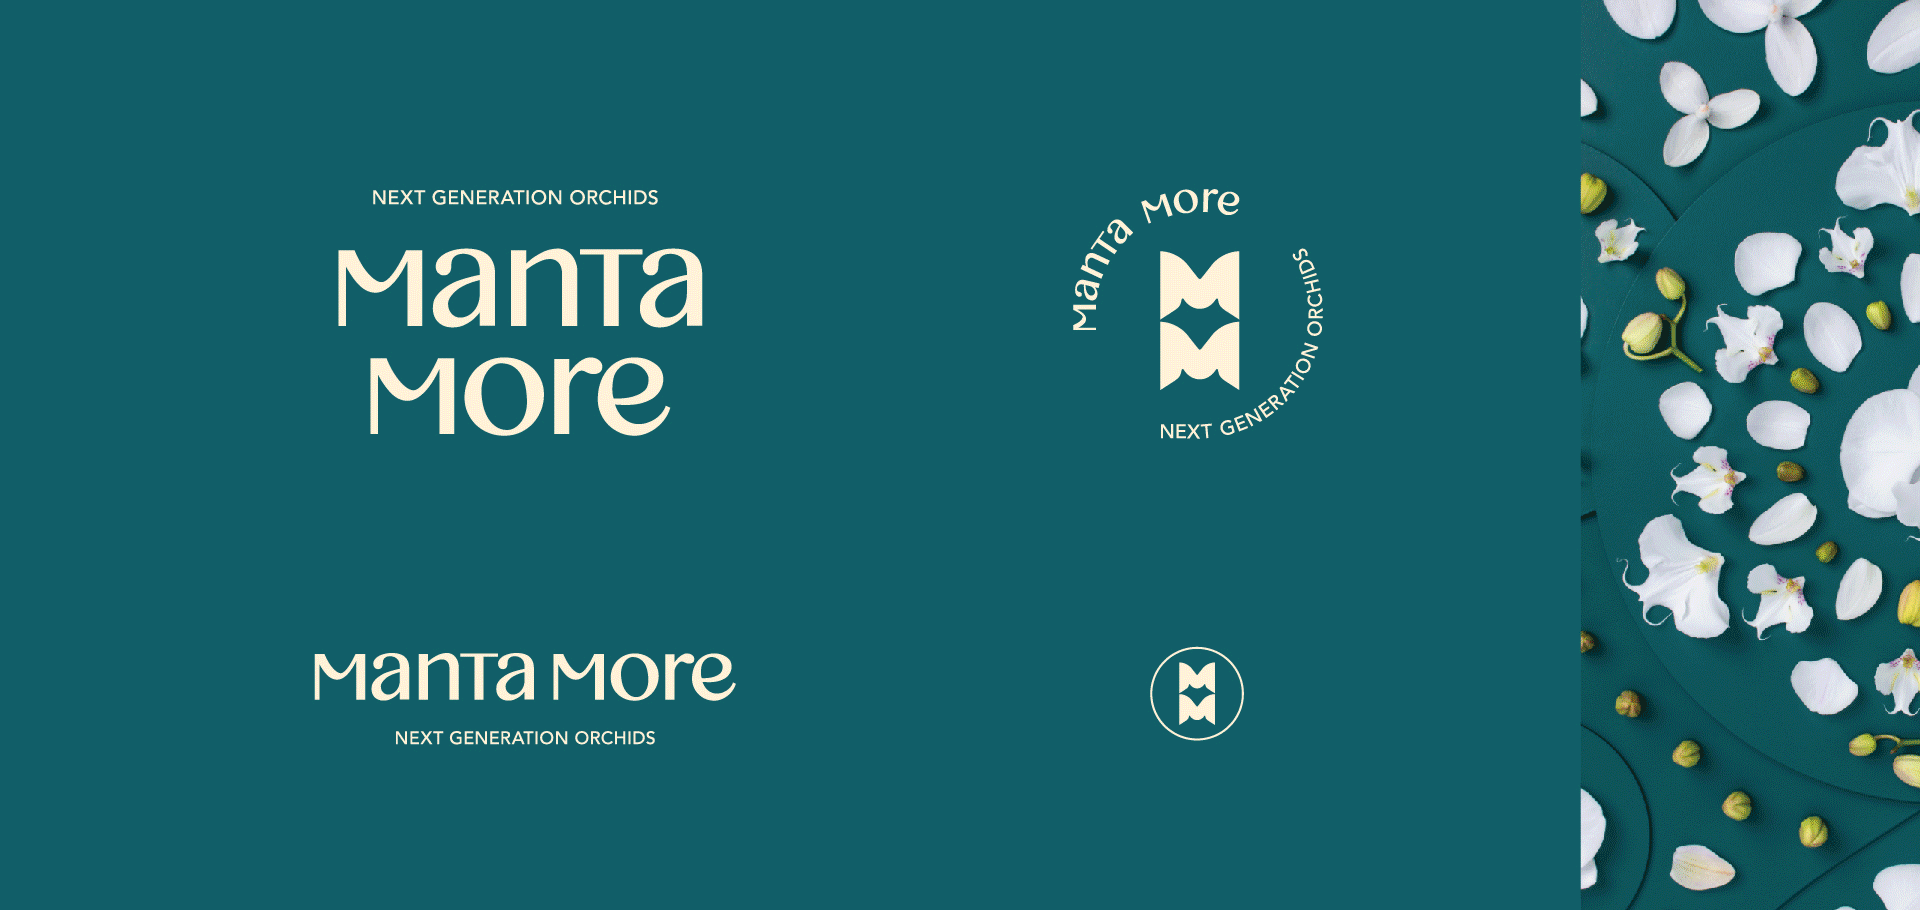 Manta More_logos 03